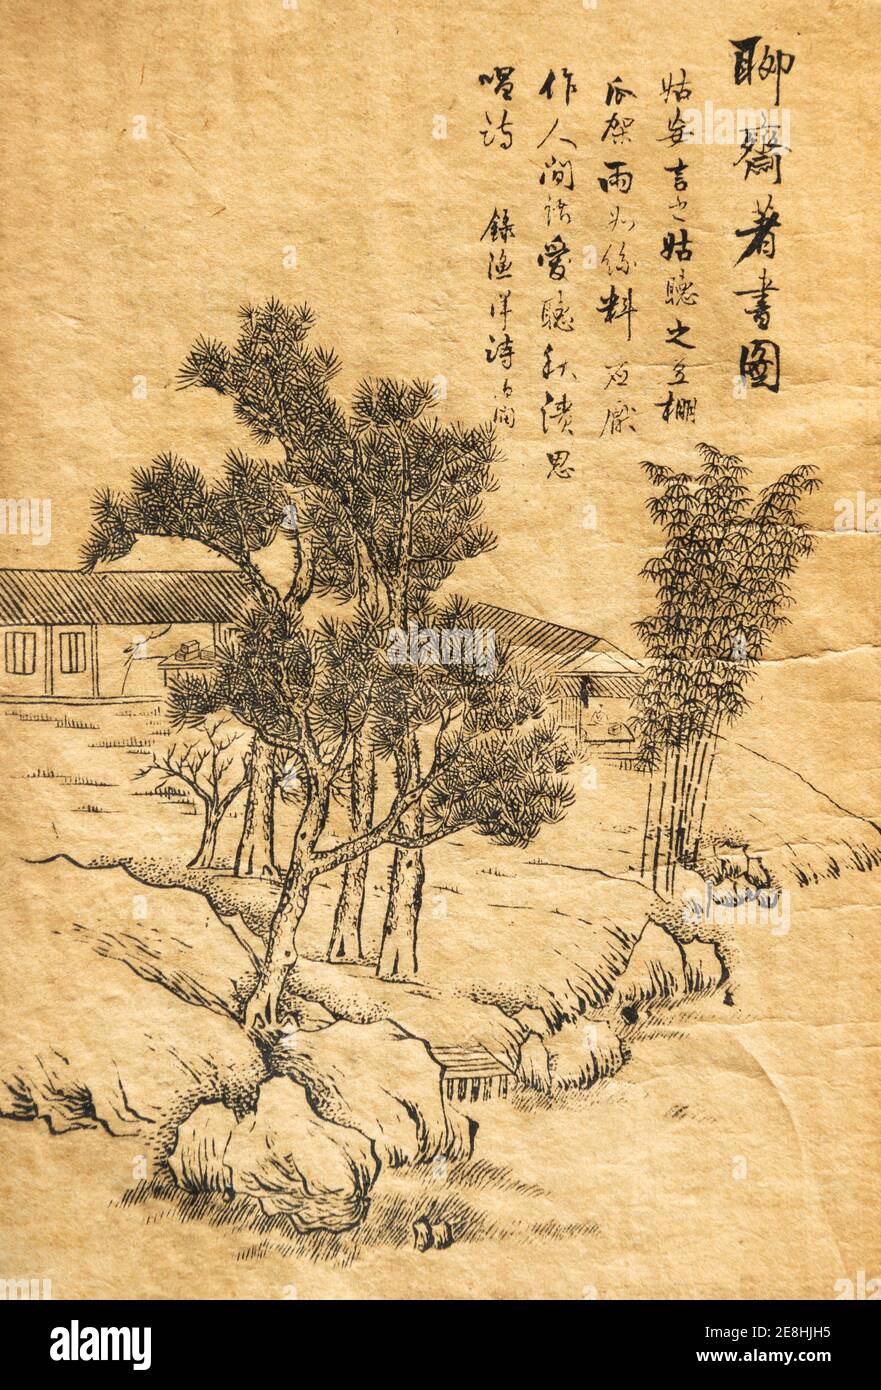 Illustration d'une copie de la dynastie Qing tardive montrant pu Sonling écrivant des Tales étranges d'un studio chinois (Liaozhai Zhiyi). Banque D'Images